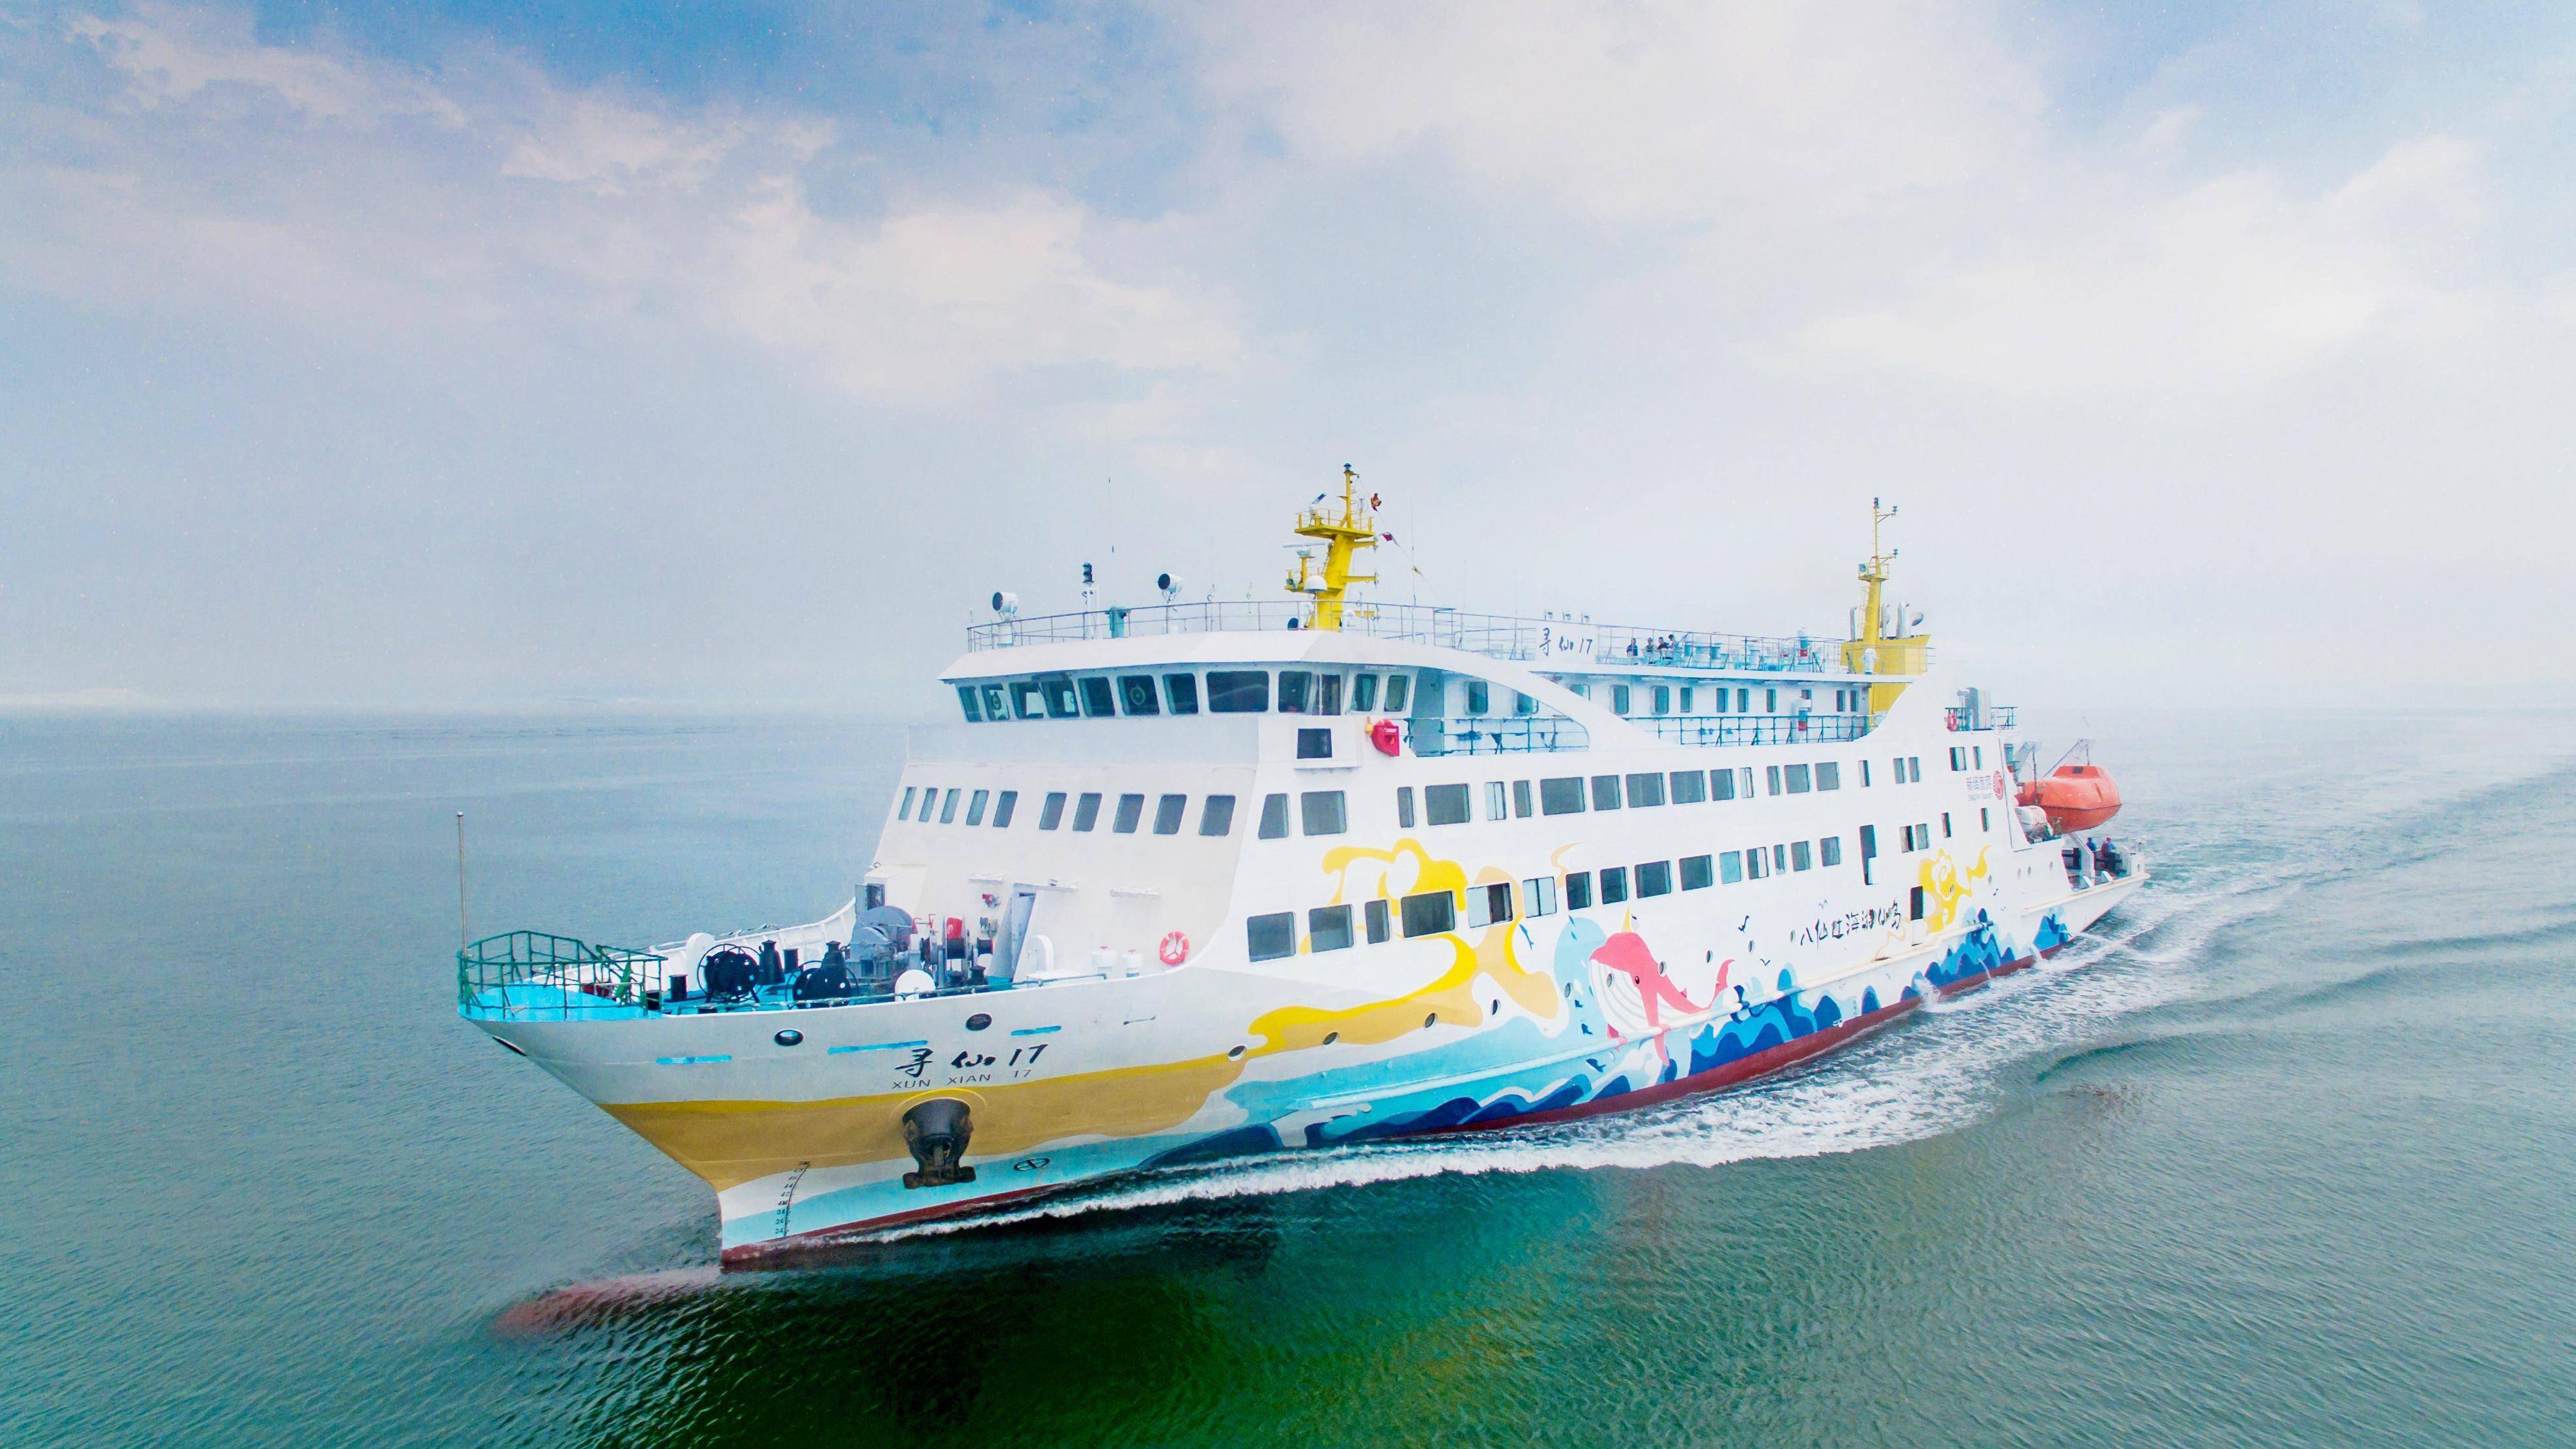 烟台:为长岛至旅顺海上航线开展保障服务